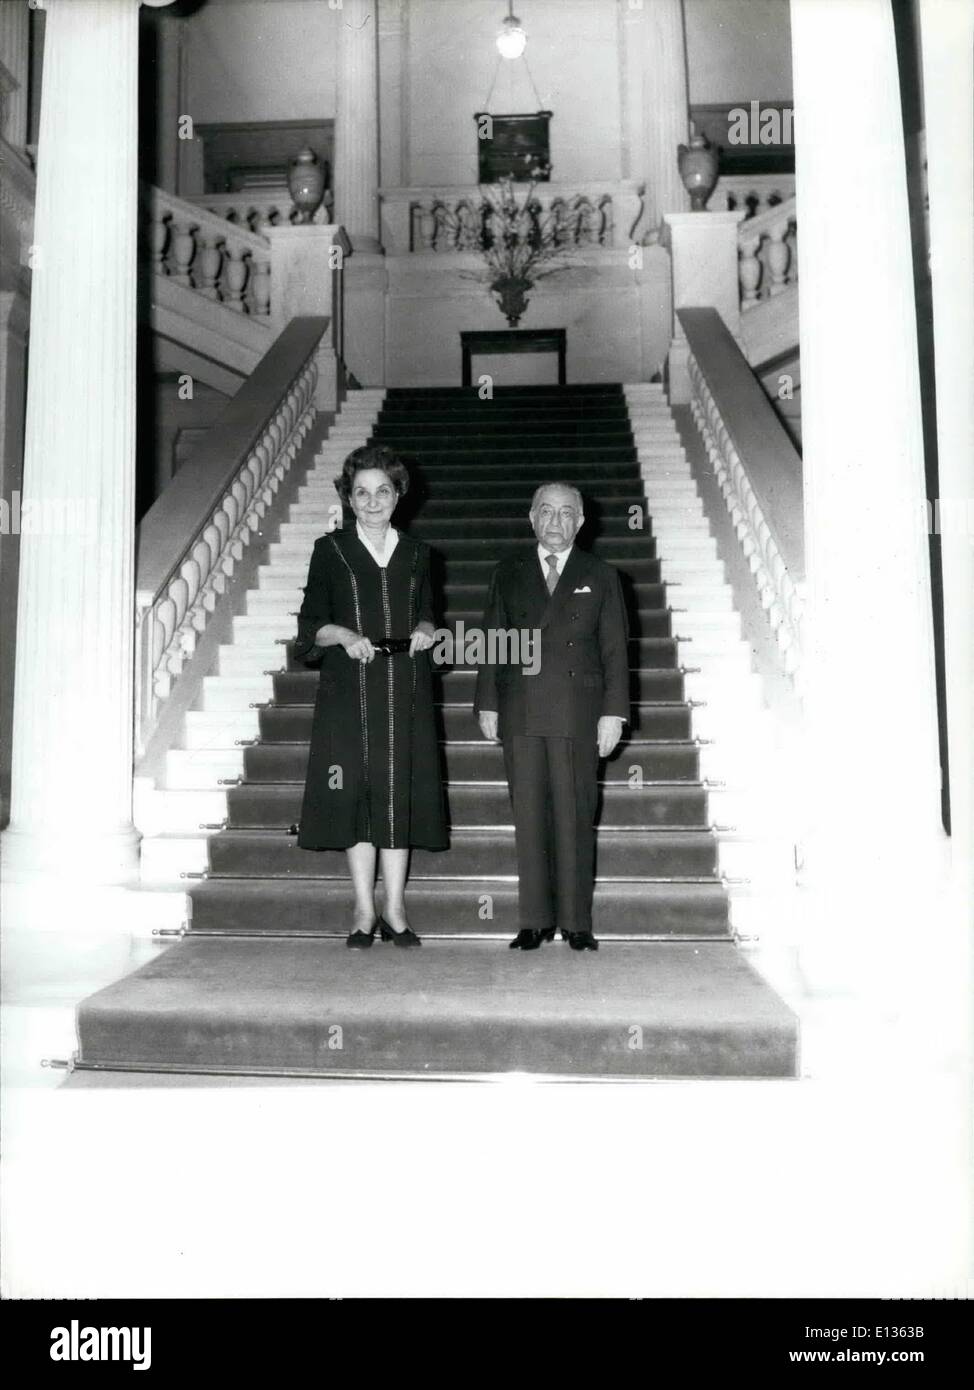 28 févr. 2012 - Président Tsatsos et son épouse Ioanna dans un fonctionnaire posent au pied de l'ancien palais des mesures de l'intérieur. (Cred Banque D'Images